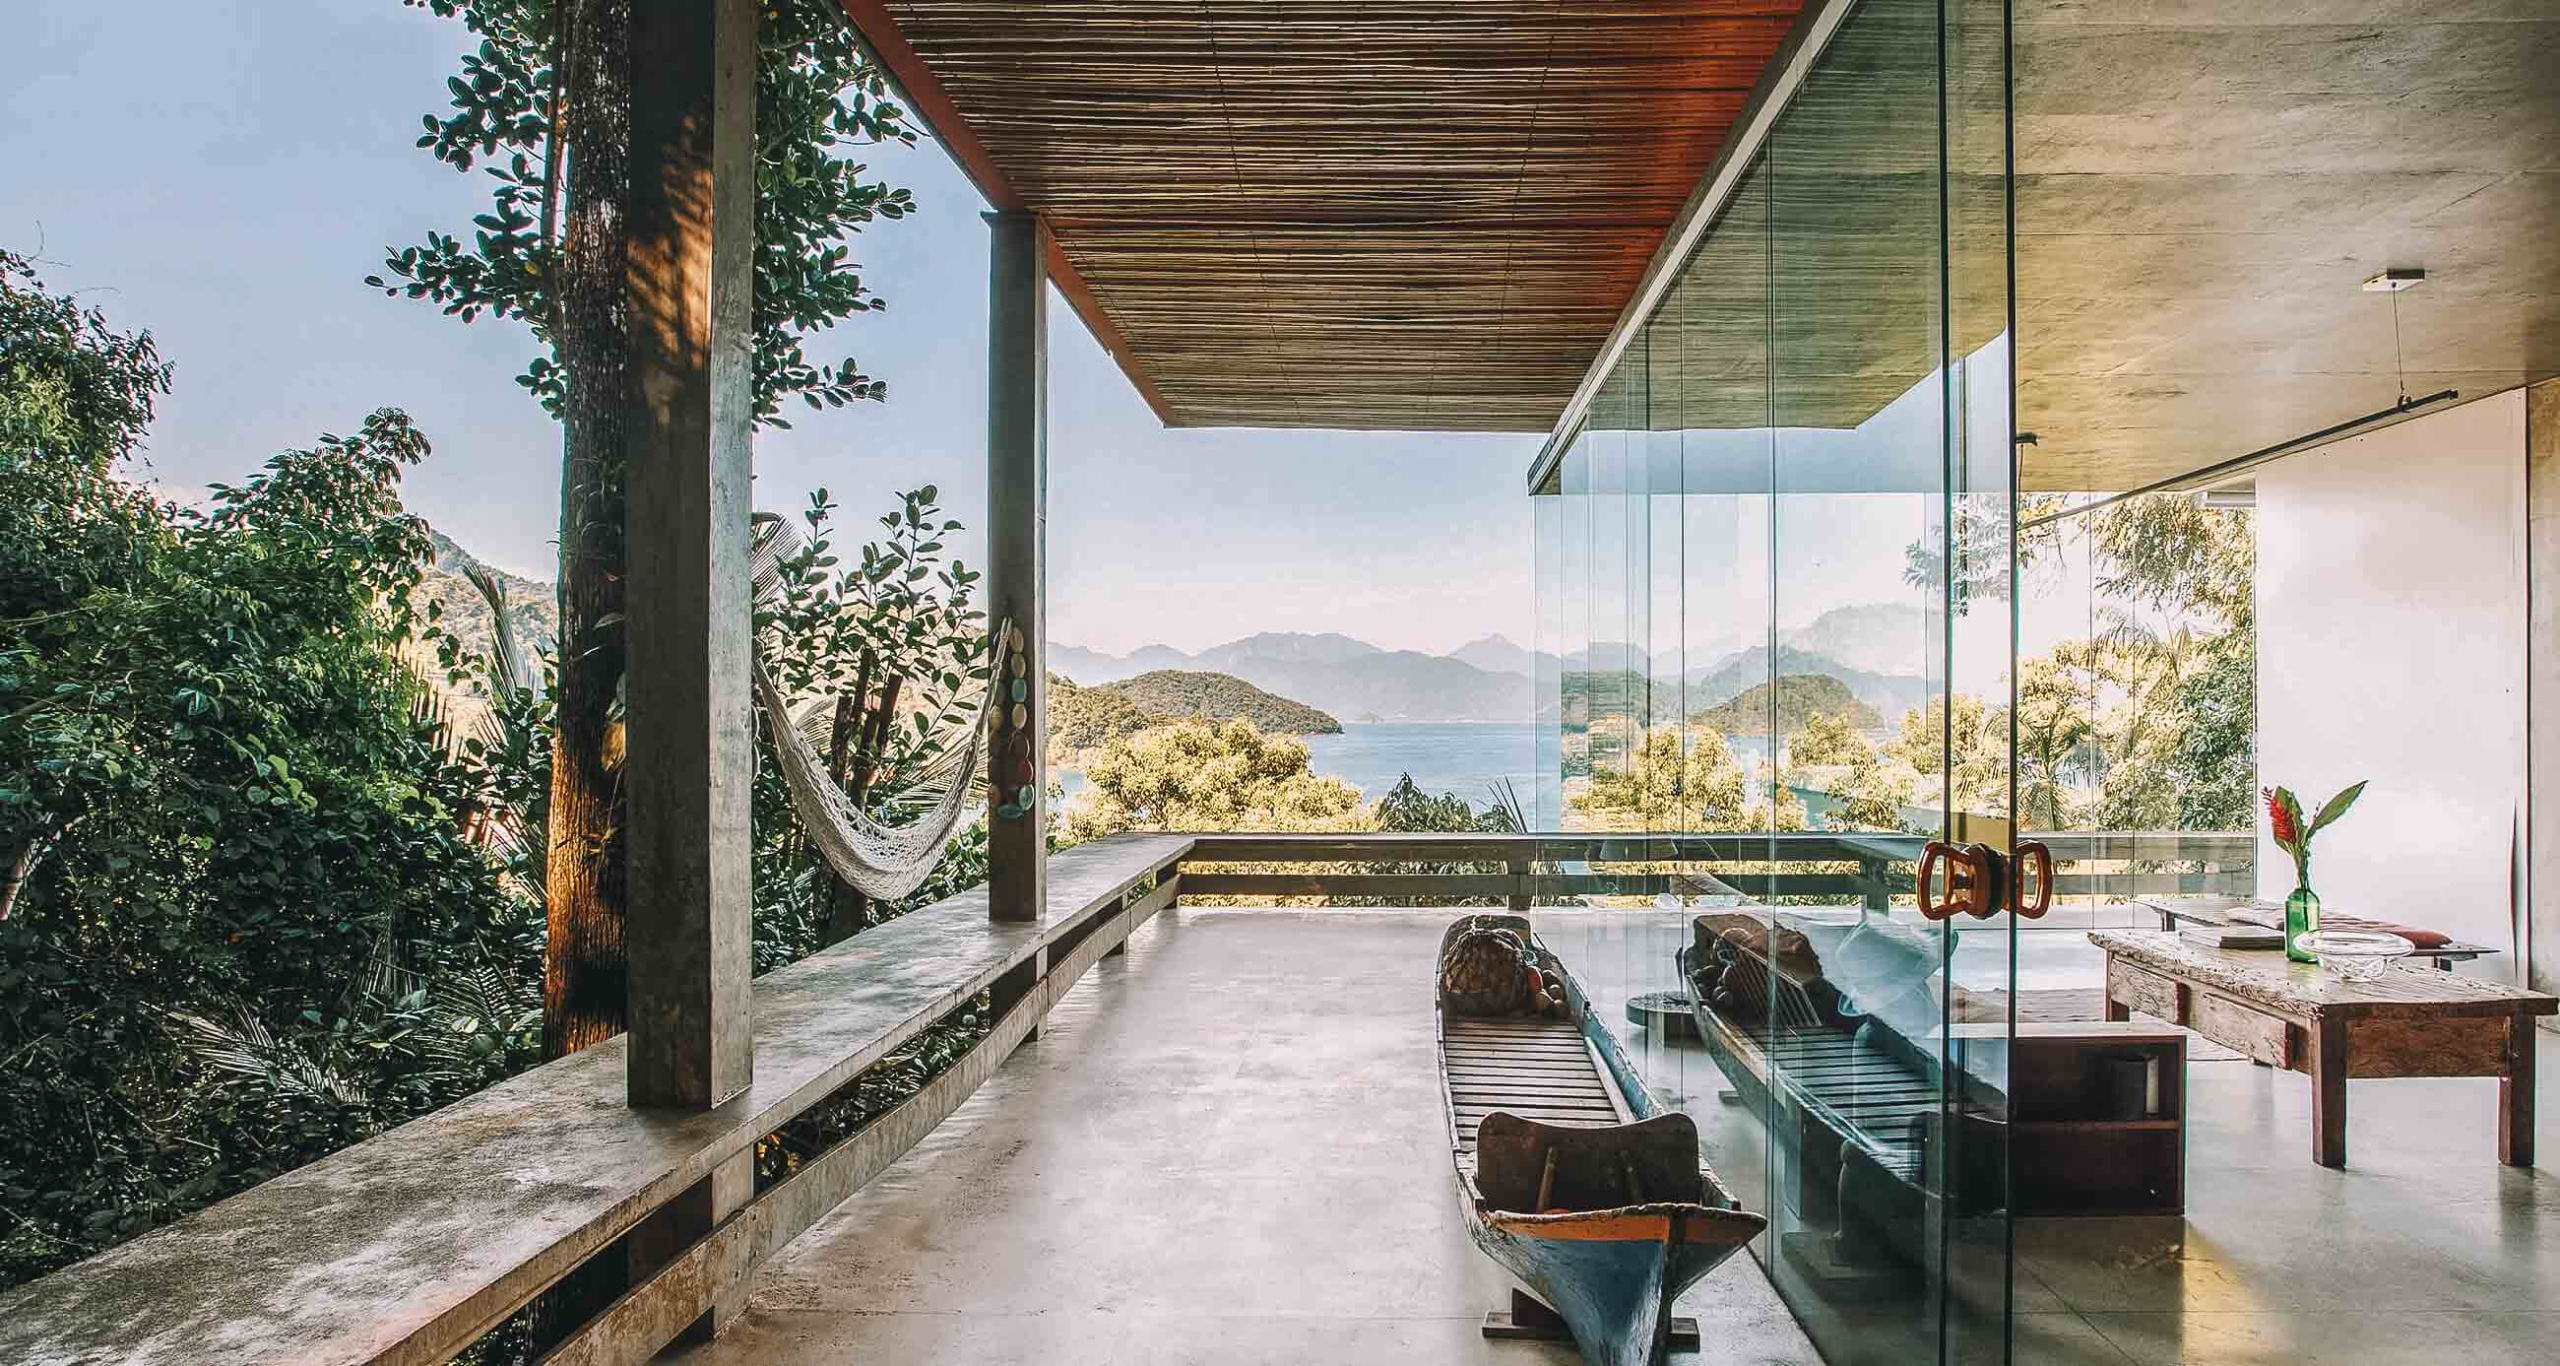 Casa de vidro Airbnr em Ubatuba, SP | Foto: Reprodução